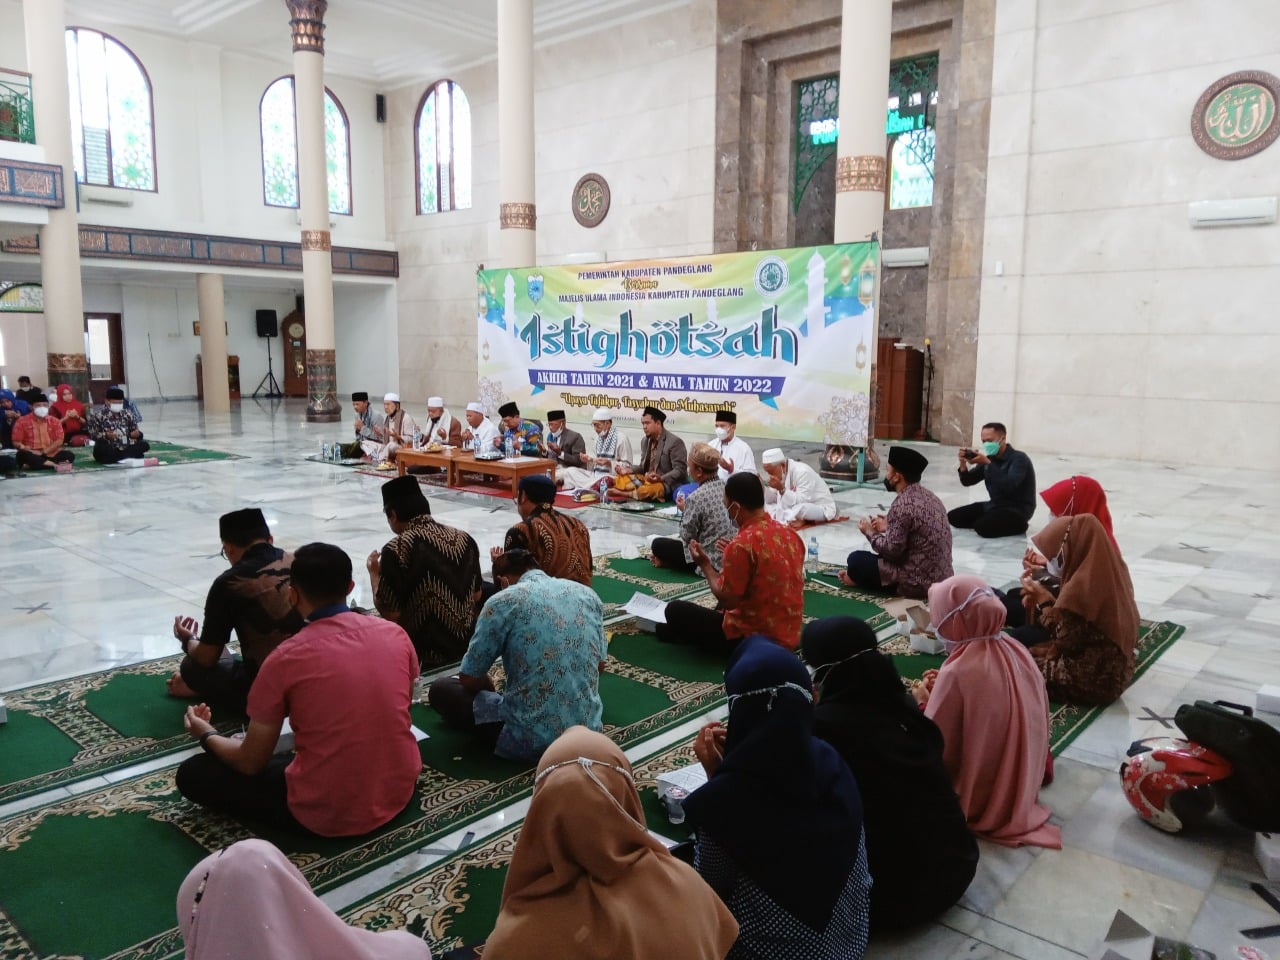 Tampak para jamaah Khusu mengikuti istighosah dan doa bersama dalam rangka menutup akhir tahun 2021 dan menyambut tahun baru 2022 di Masjid Agung Ar-Rahman, Jumat (31/12/2021).